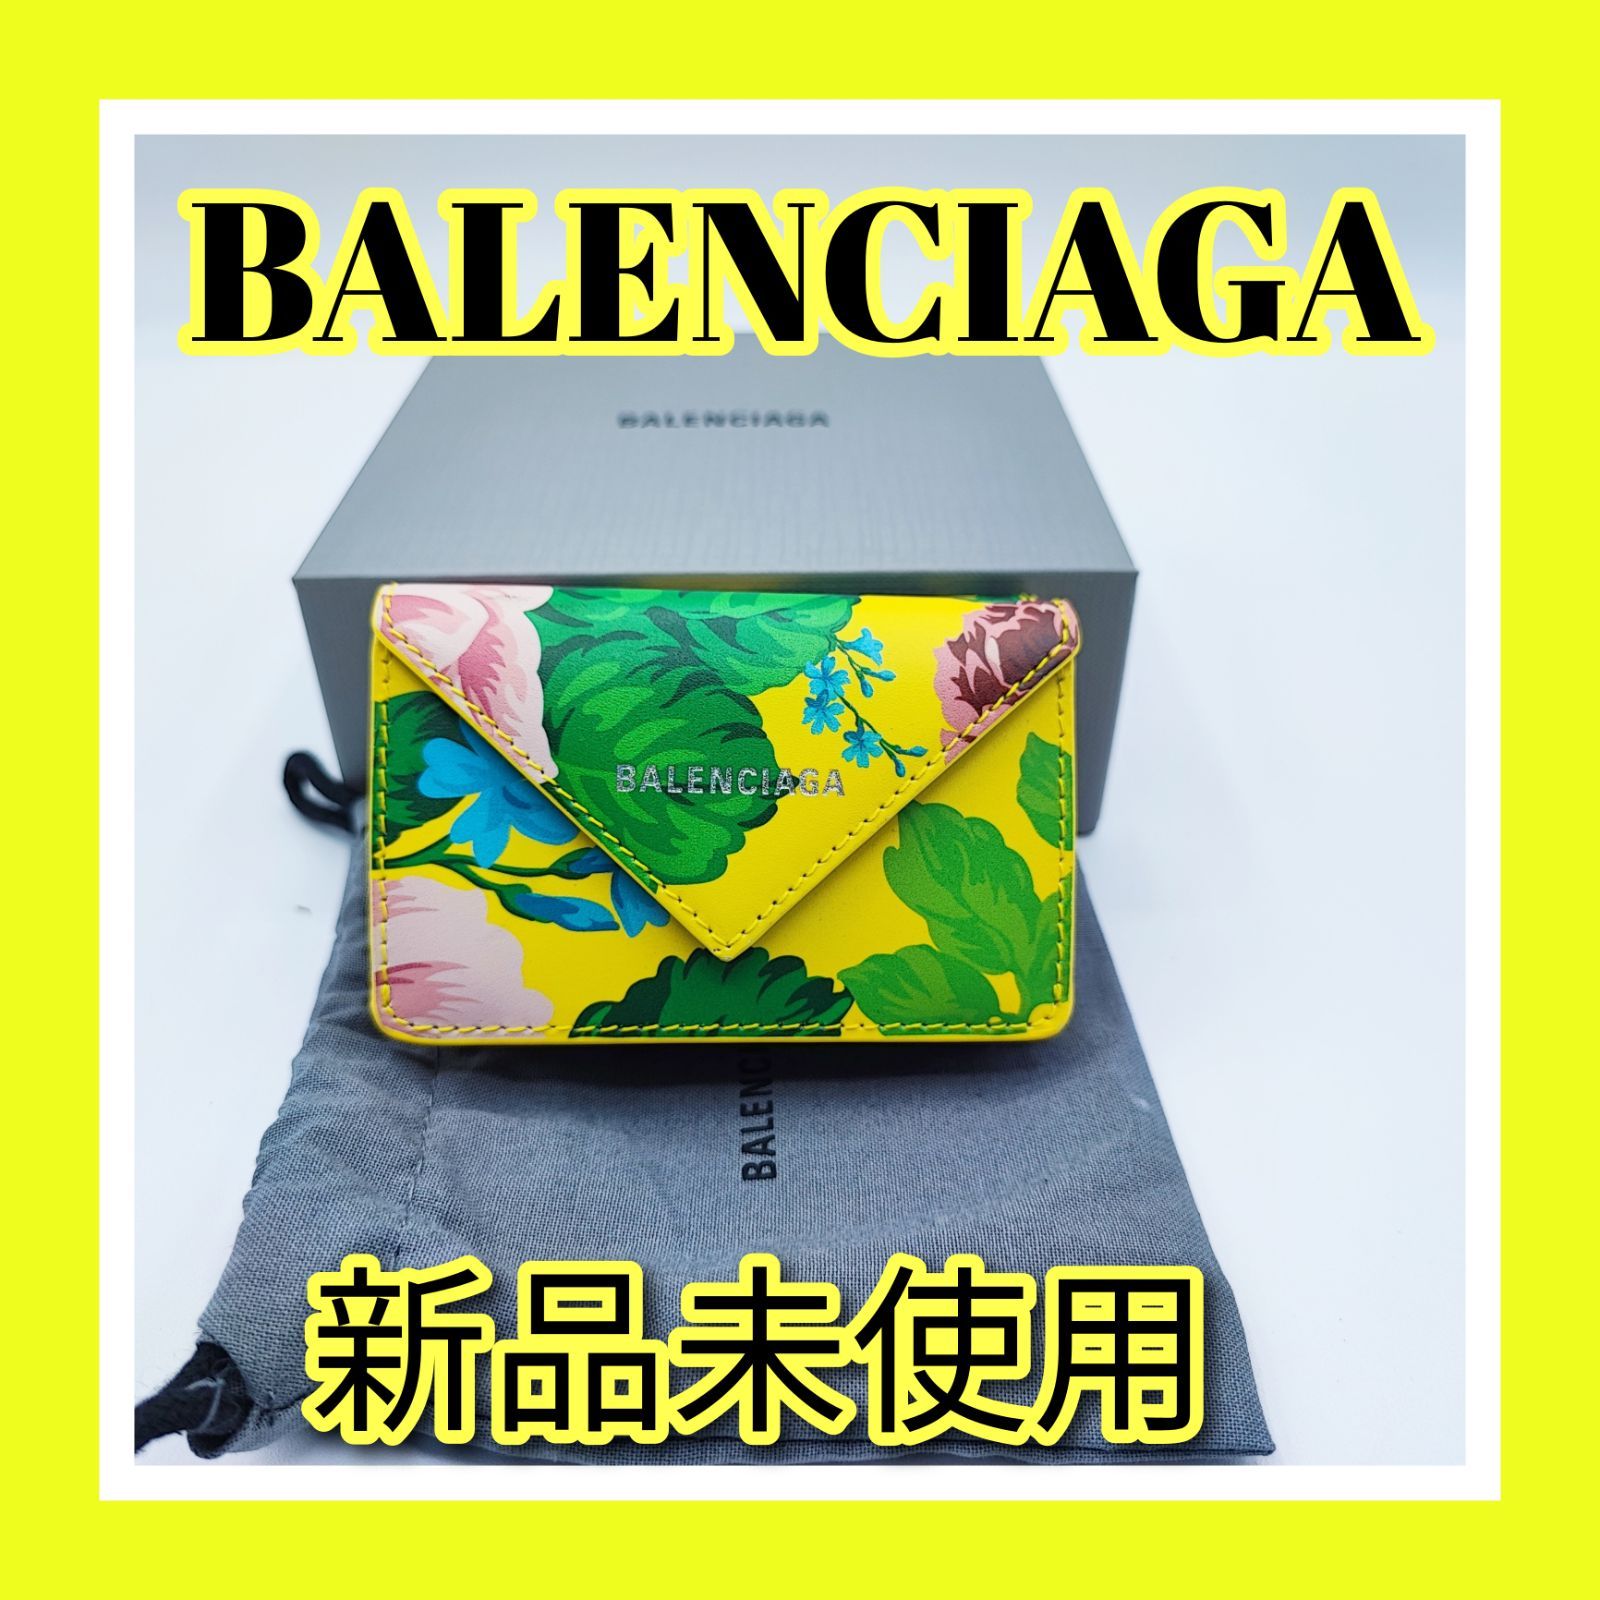 バレンシアガ BALENCIAGA 3つ折り財布 新品未使用 - ヨーロッパ直販